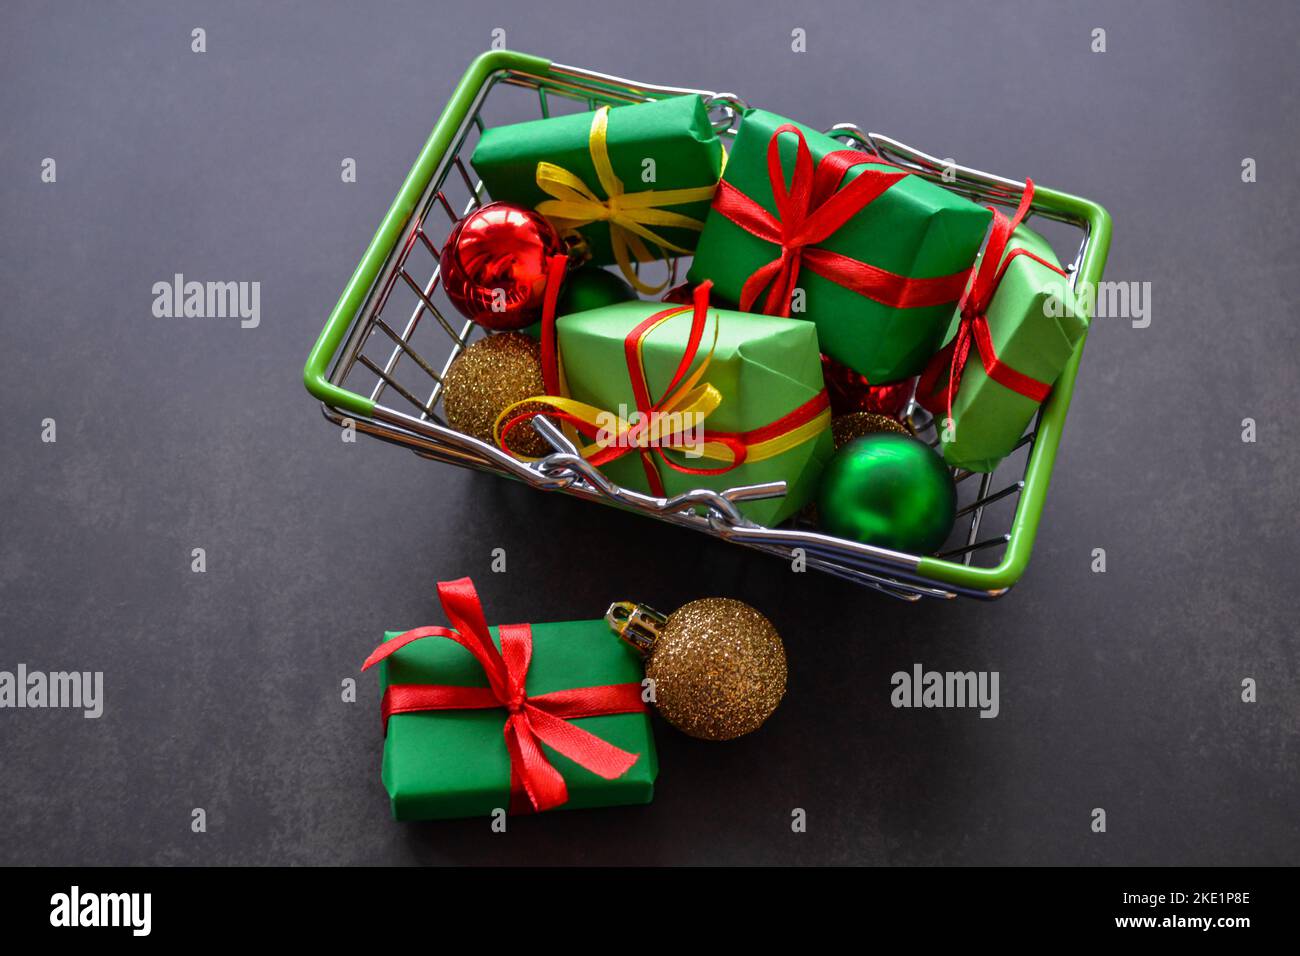 Panier avec cadeaux en papier vert, noeuds rouges et jaunes, boules de Noël en rouge, vert, or sur fond noir. Quelques cadeaux, des boules sont près. Banque D'Images